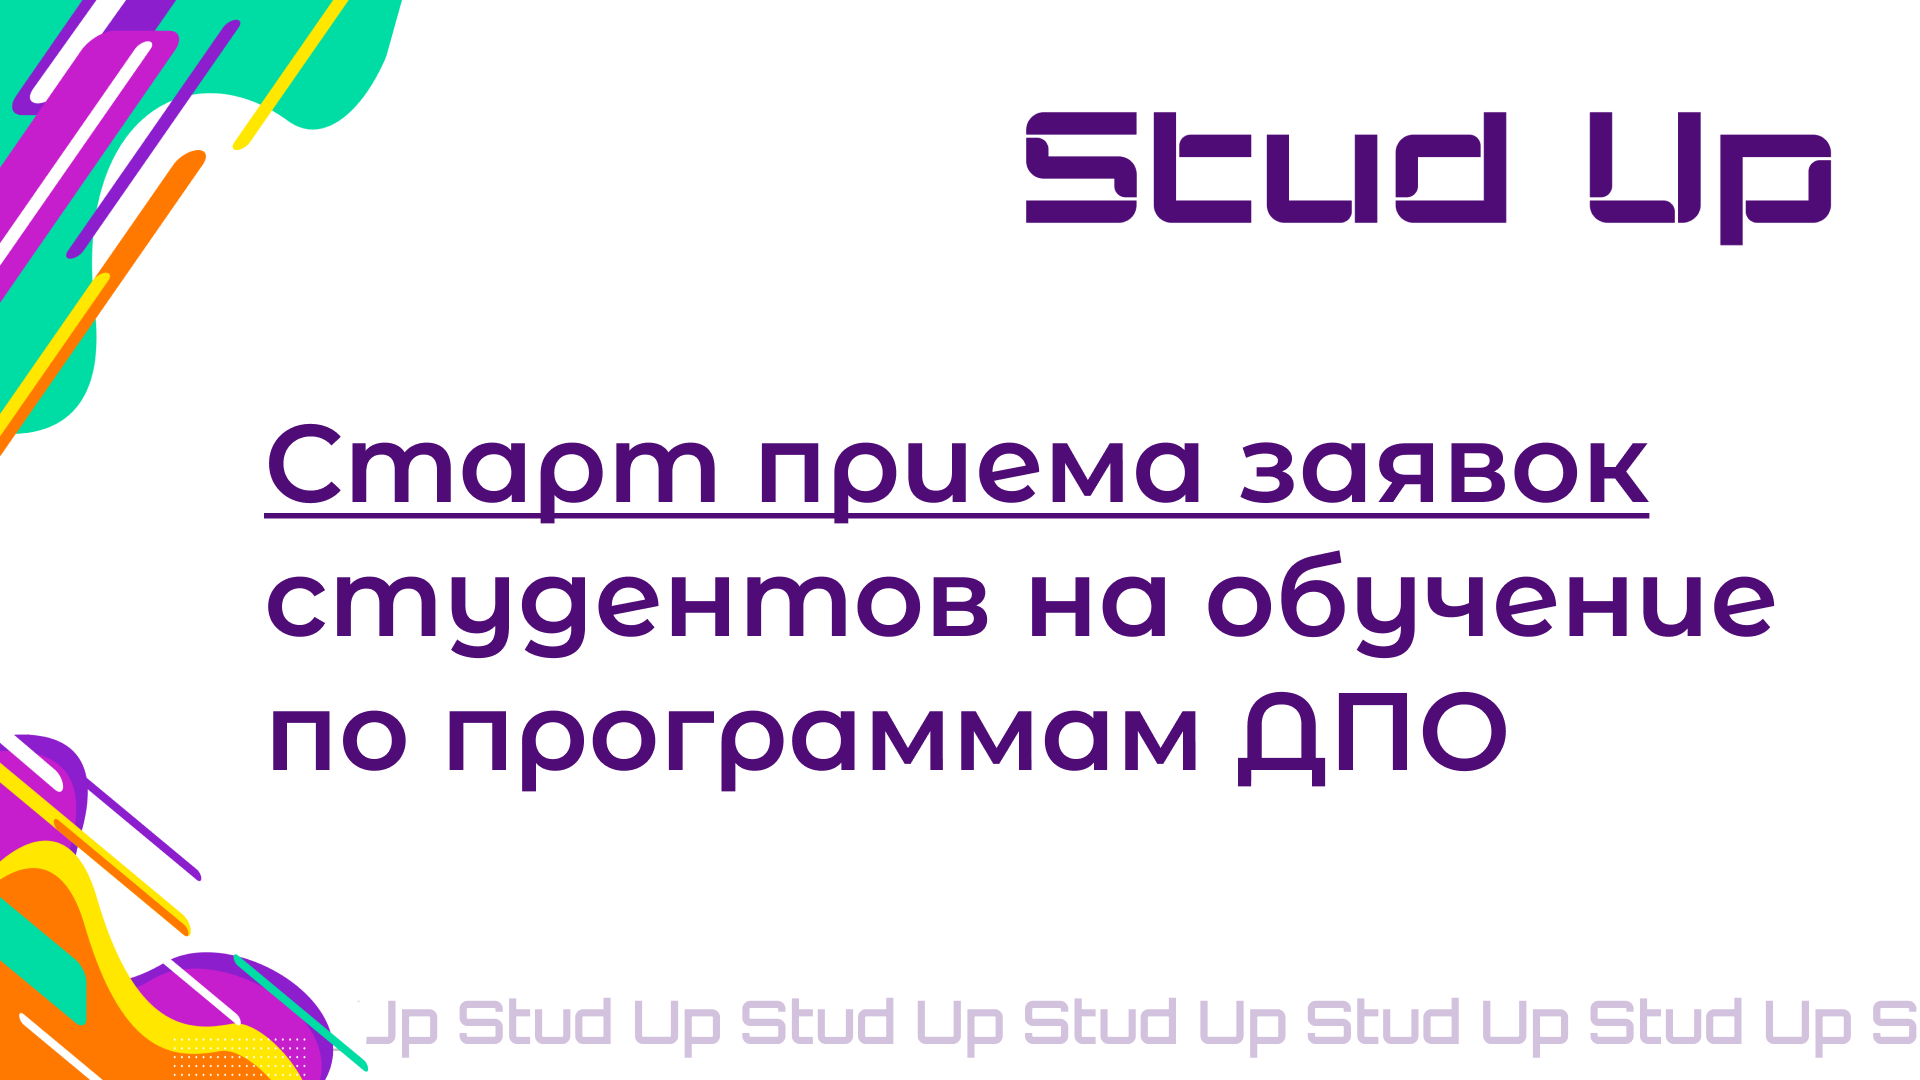 StudUp – это проект для студентов Фина​нсового университета, а также его филиалов для получения дополнительного профессионального образования.